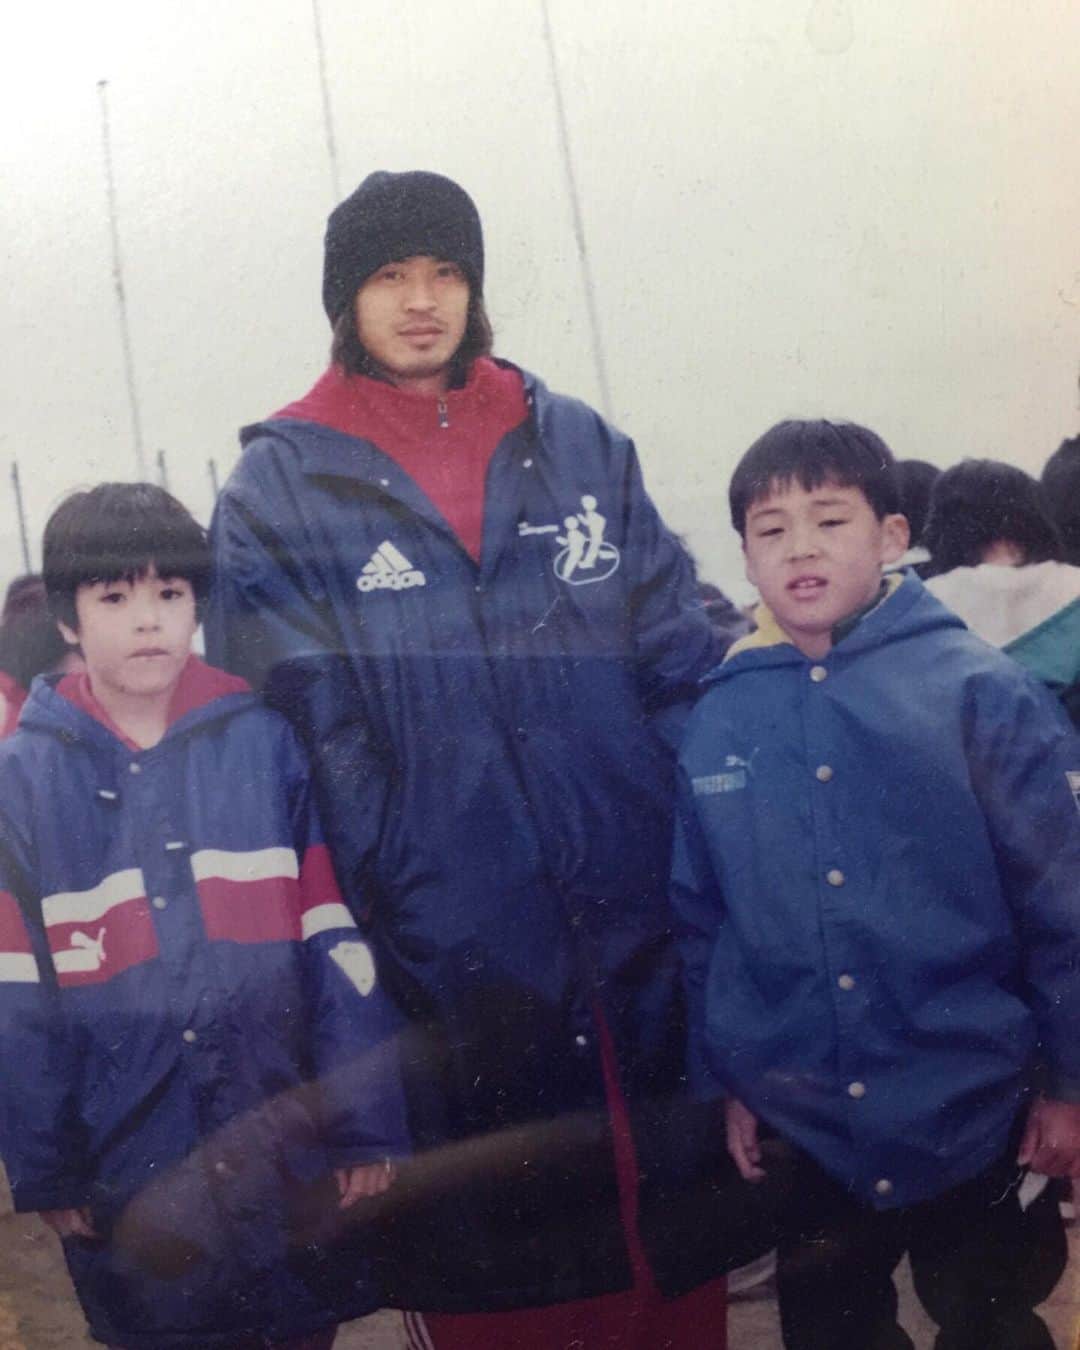 濱田水輝のインスタグラム：「子供の日🎏  僕は子供の頃からずっとサッカー中心の生活をしてきました⚽️ 多くの犠牲を払ってくれたであろう両親には本当感謝です。 そして自分の親がそうしてくれたように、自分の子供にはいろんなことを経験させて、好きなことをたくさんやらせてあげようと思います😊  この写真は地元のマラソン大会の後に当時浦和レッズに所属していた大柴健二選手と撮らせてもらった1枚です📸 この10年後にまさか自分が浦和レッズに入団するなんて全く想像していませんでしたね。  小さい頃の記憶って思い出せることの方が圧倒的に少ないけど、この写真を撮ったときのことは鮮明に覚えているんですよね。  プロ選手から夢をもらった子供が、プロ選手になり子供たちに夢を与える。 素敵ですね✨  そんなことを再認識する良い日になりました！  #子供の日#浦和レッズOB#大柴健二 さん#ファジアーノ岡山#子供たちに夢を」